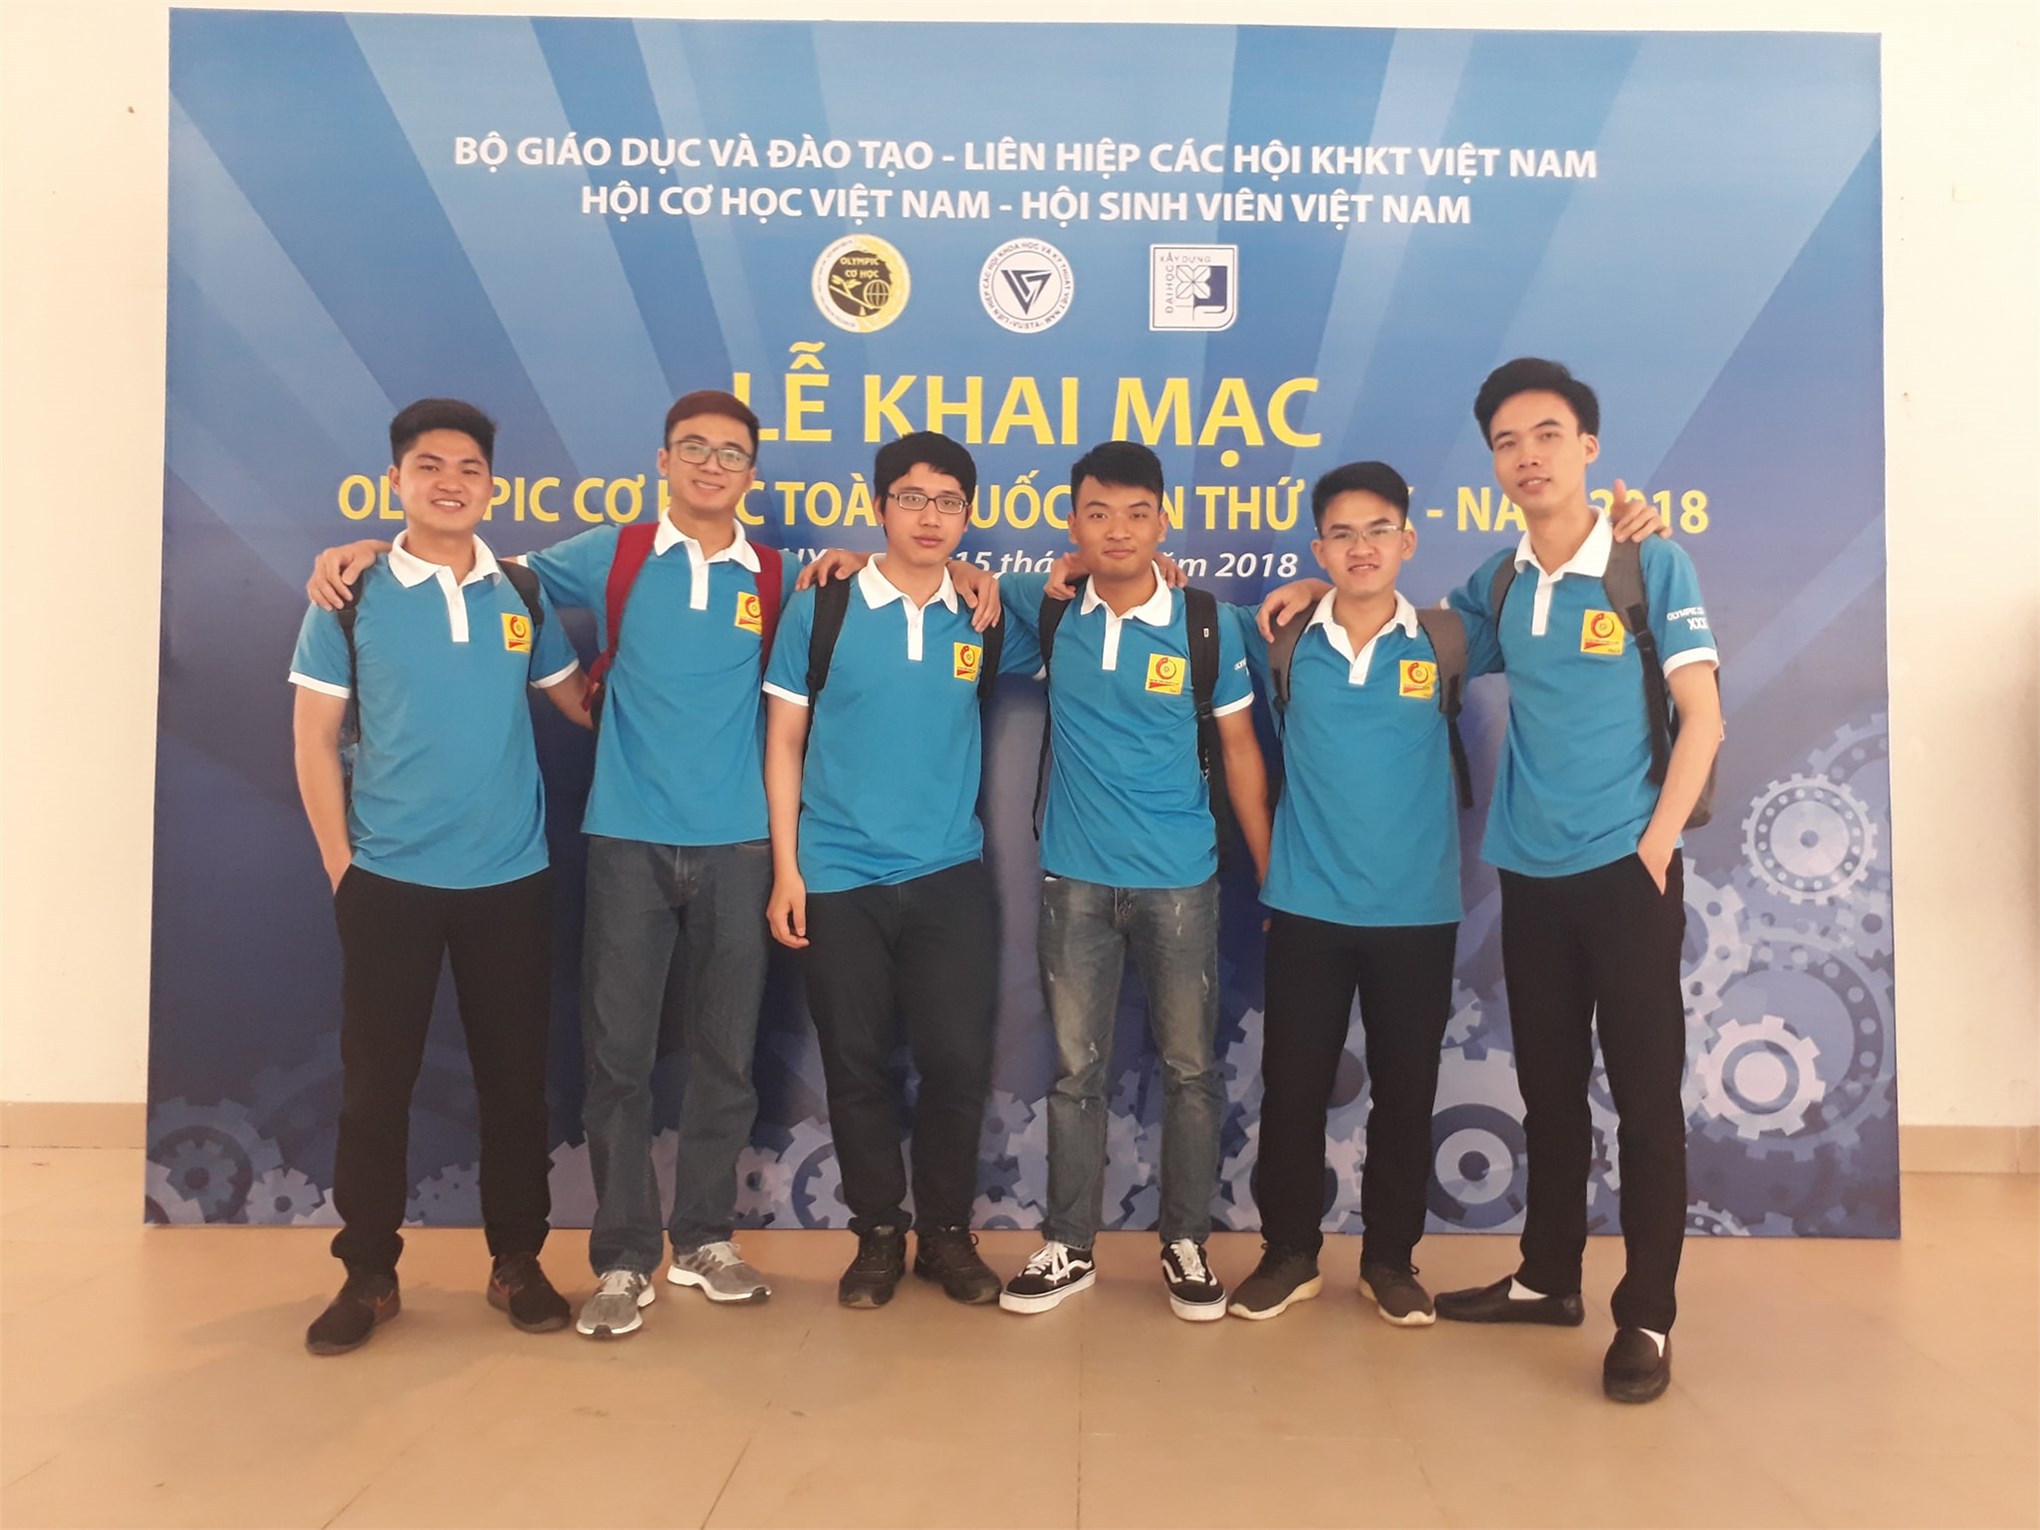 Gặp gỡ cựu sinh viên Nguyễn Thành Công- chàng lớp trưởng Cơ khí CLC1-K10